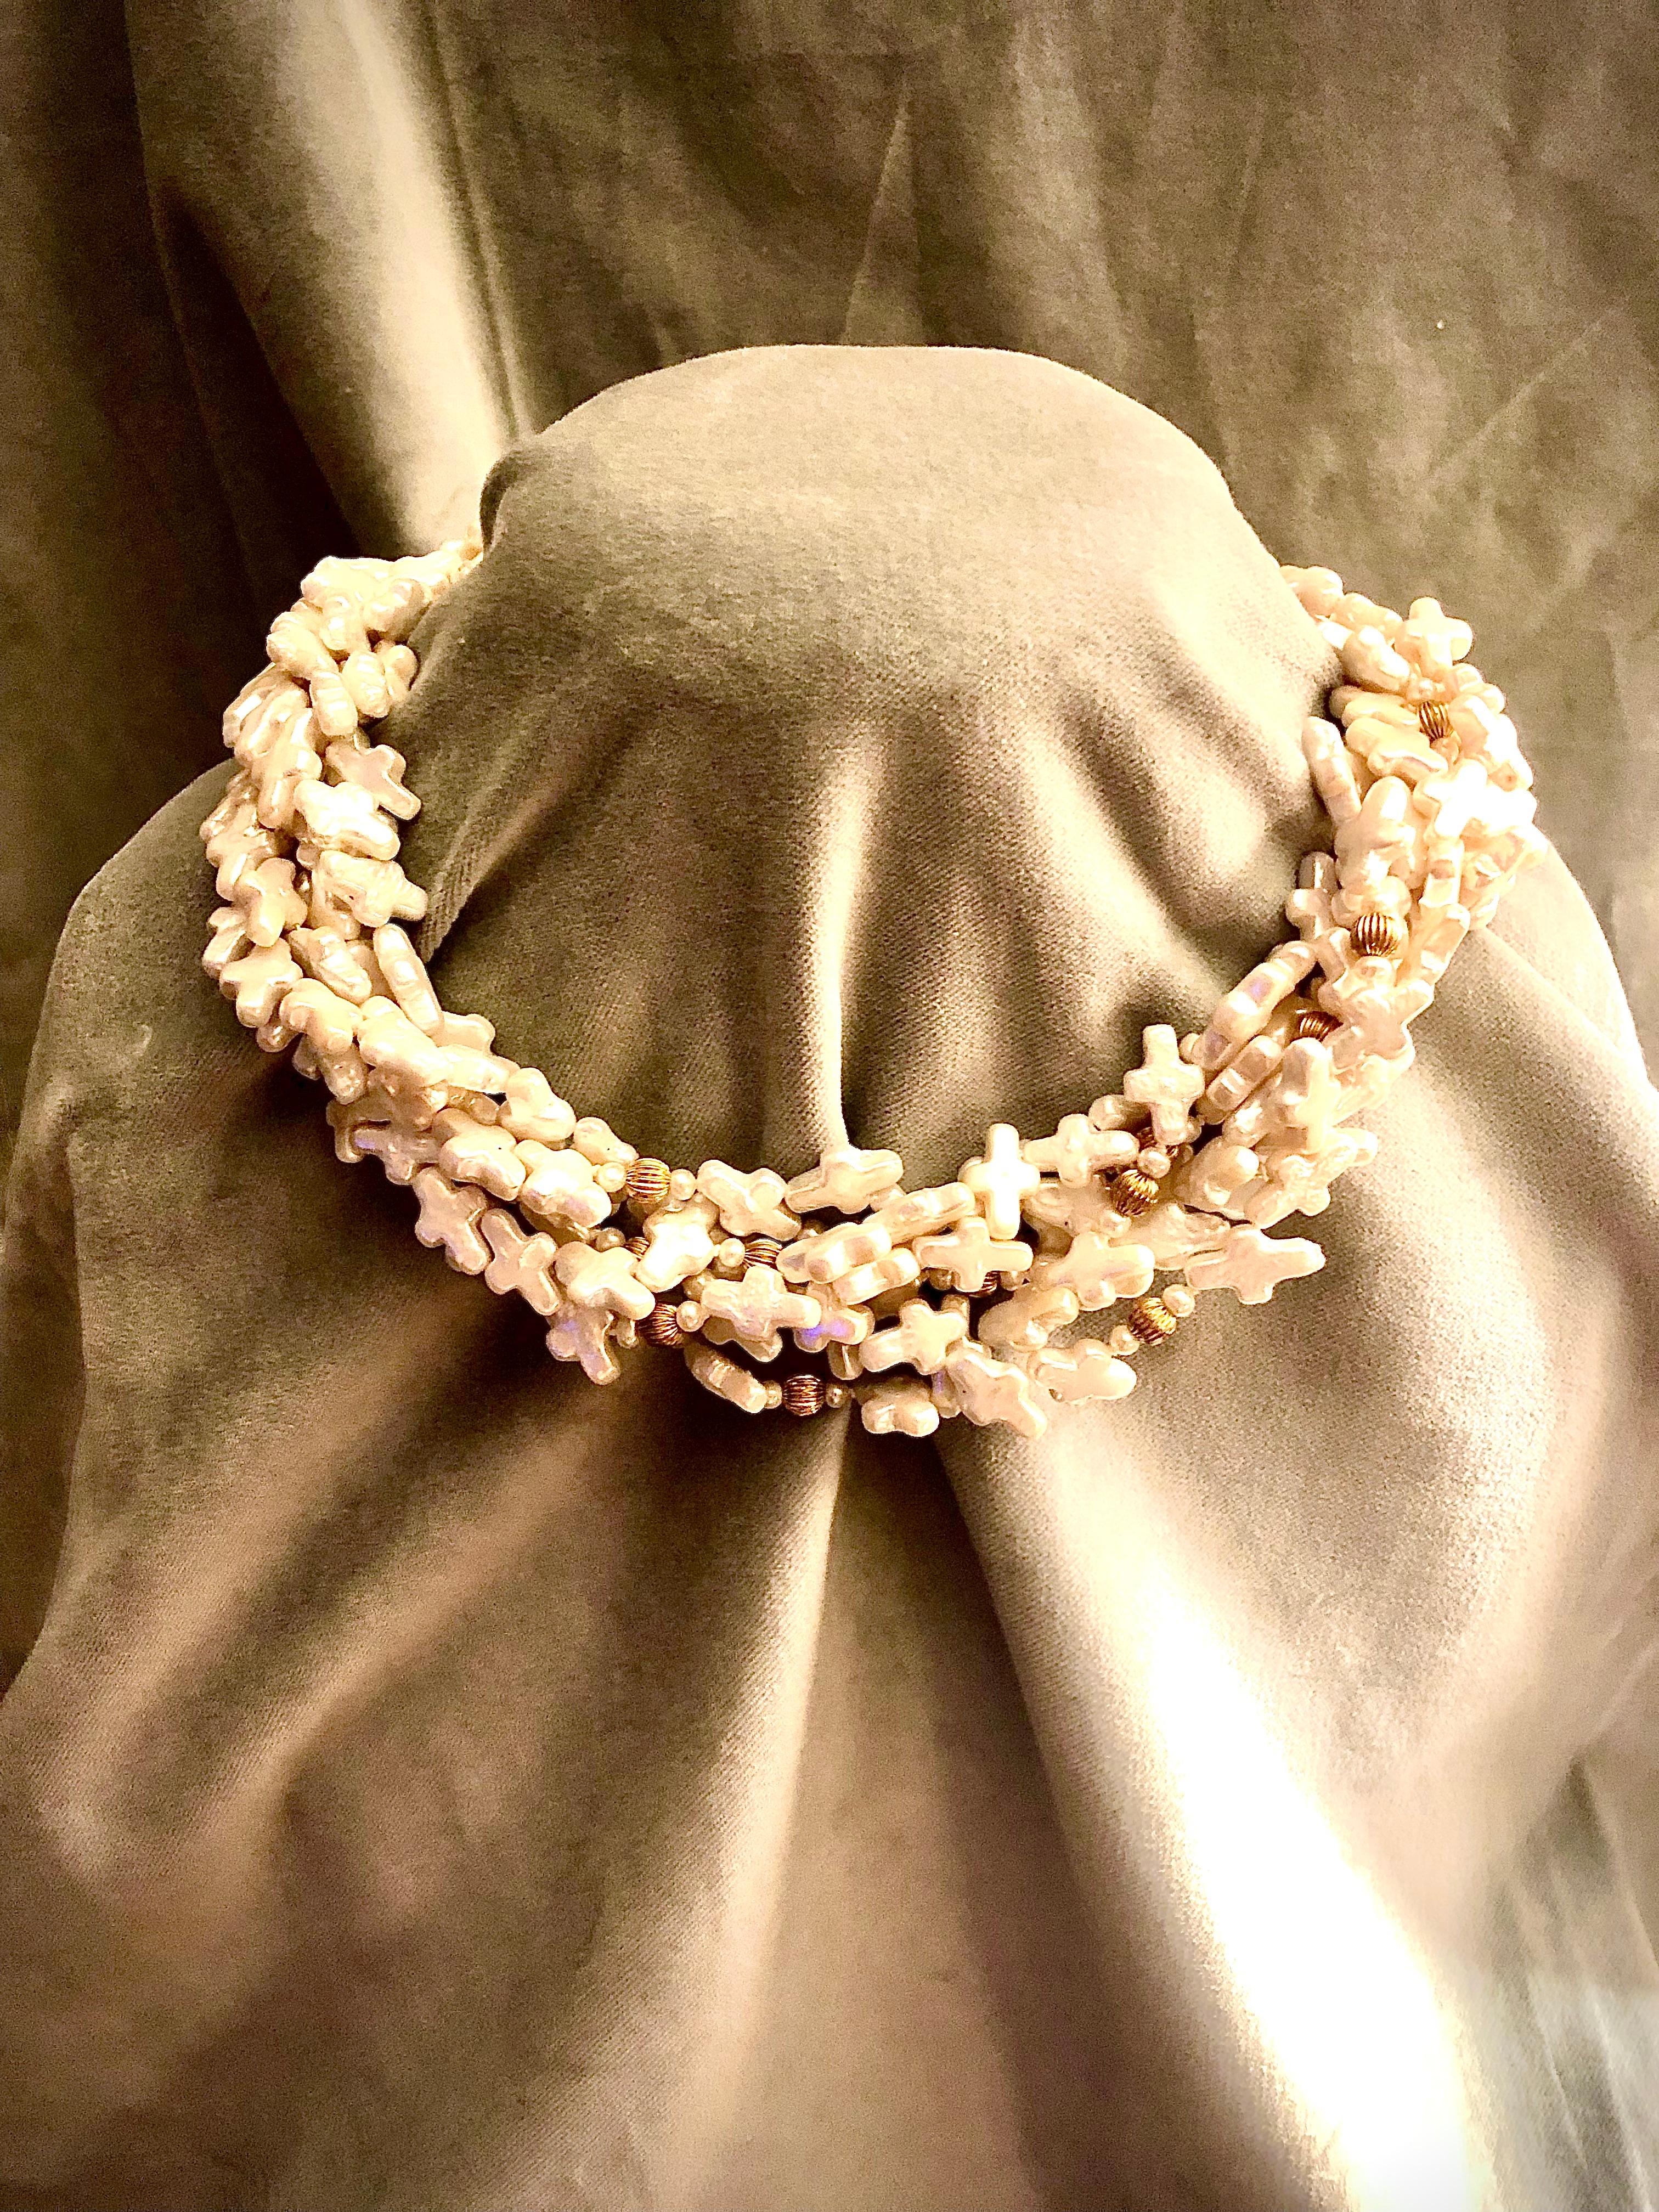 Important et très beau collier de neuf rangs de perles d'eau douce. Les perles façonnées forment un magnifique effet d'emboîtement lorsqu'elles sont délicatement tordues, encadrant le cou et le visage de la manière la plus flatteuse qui soit.

Les